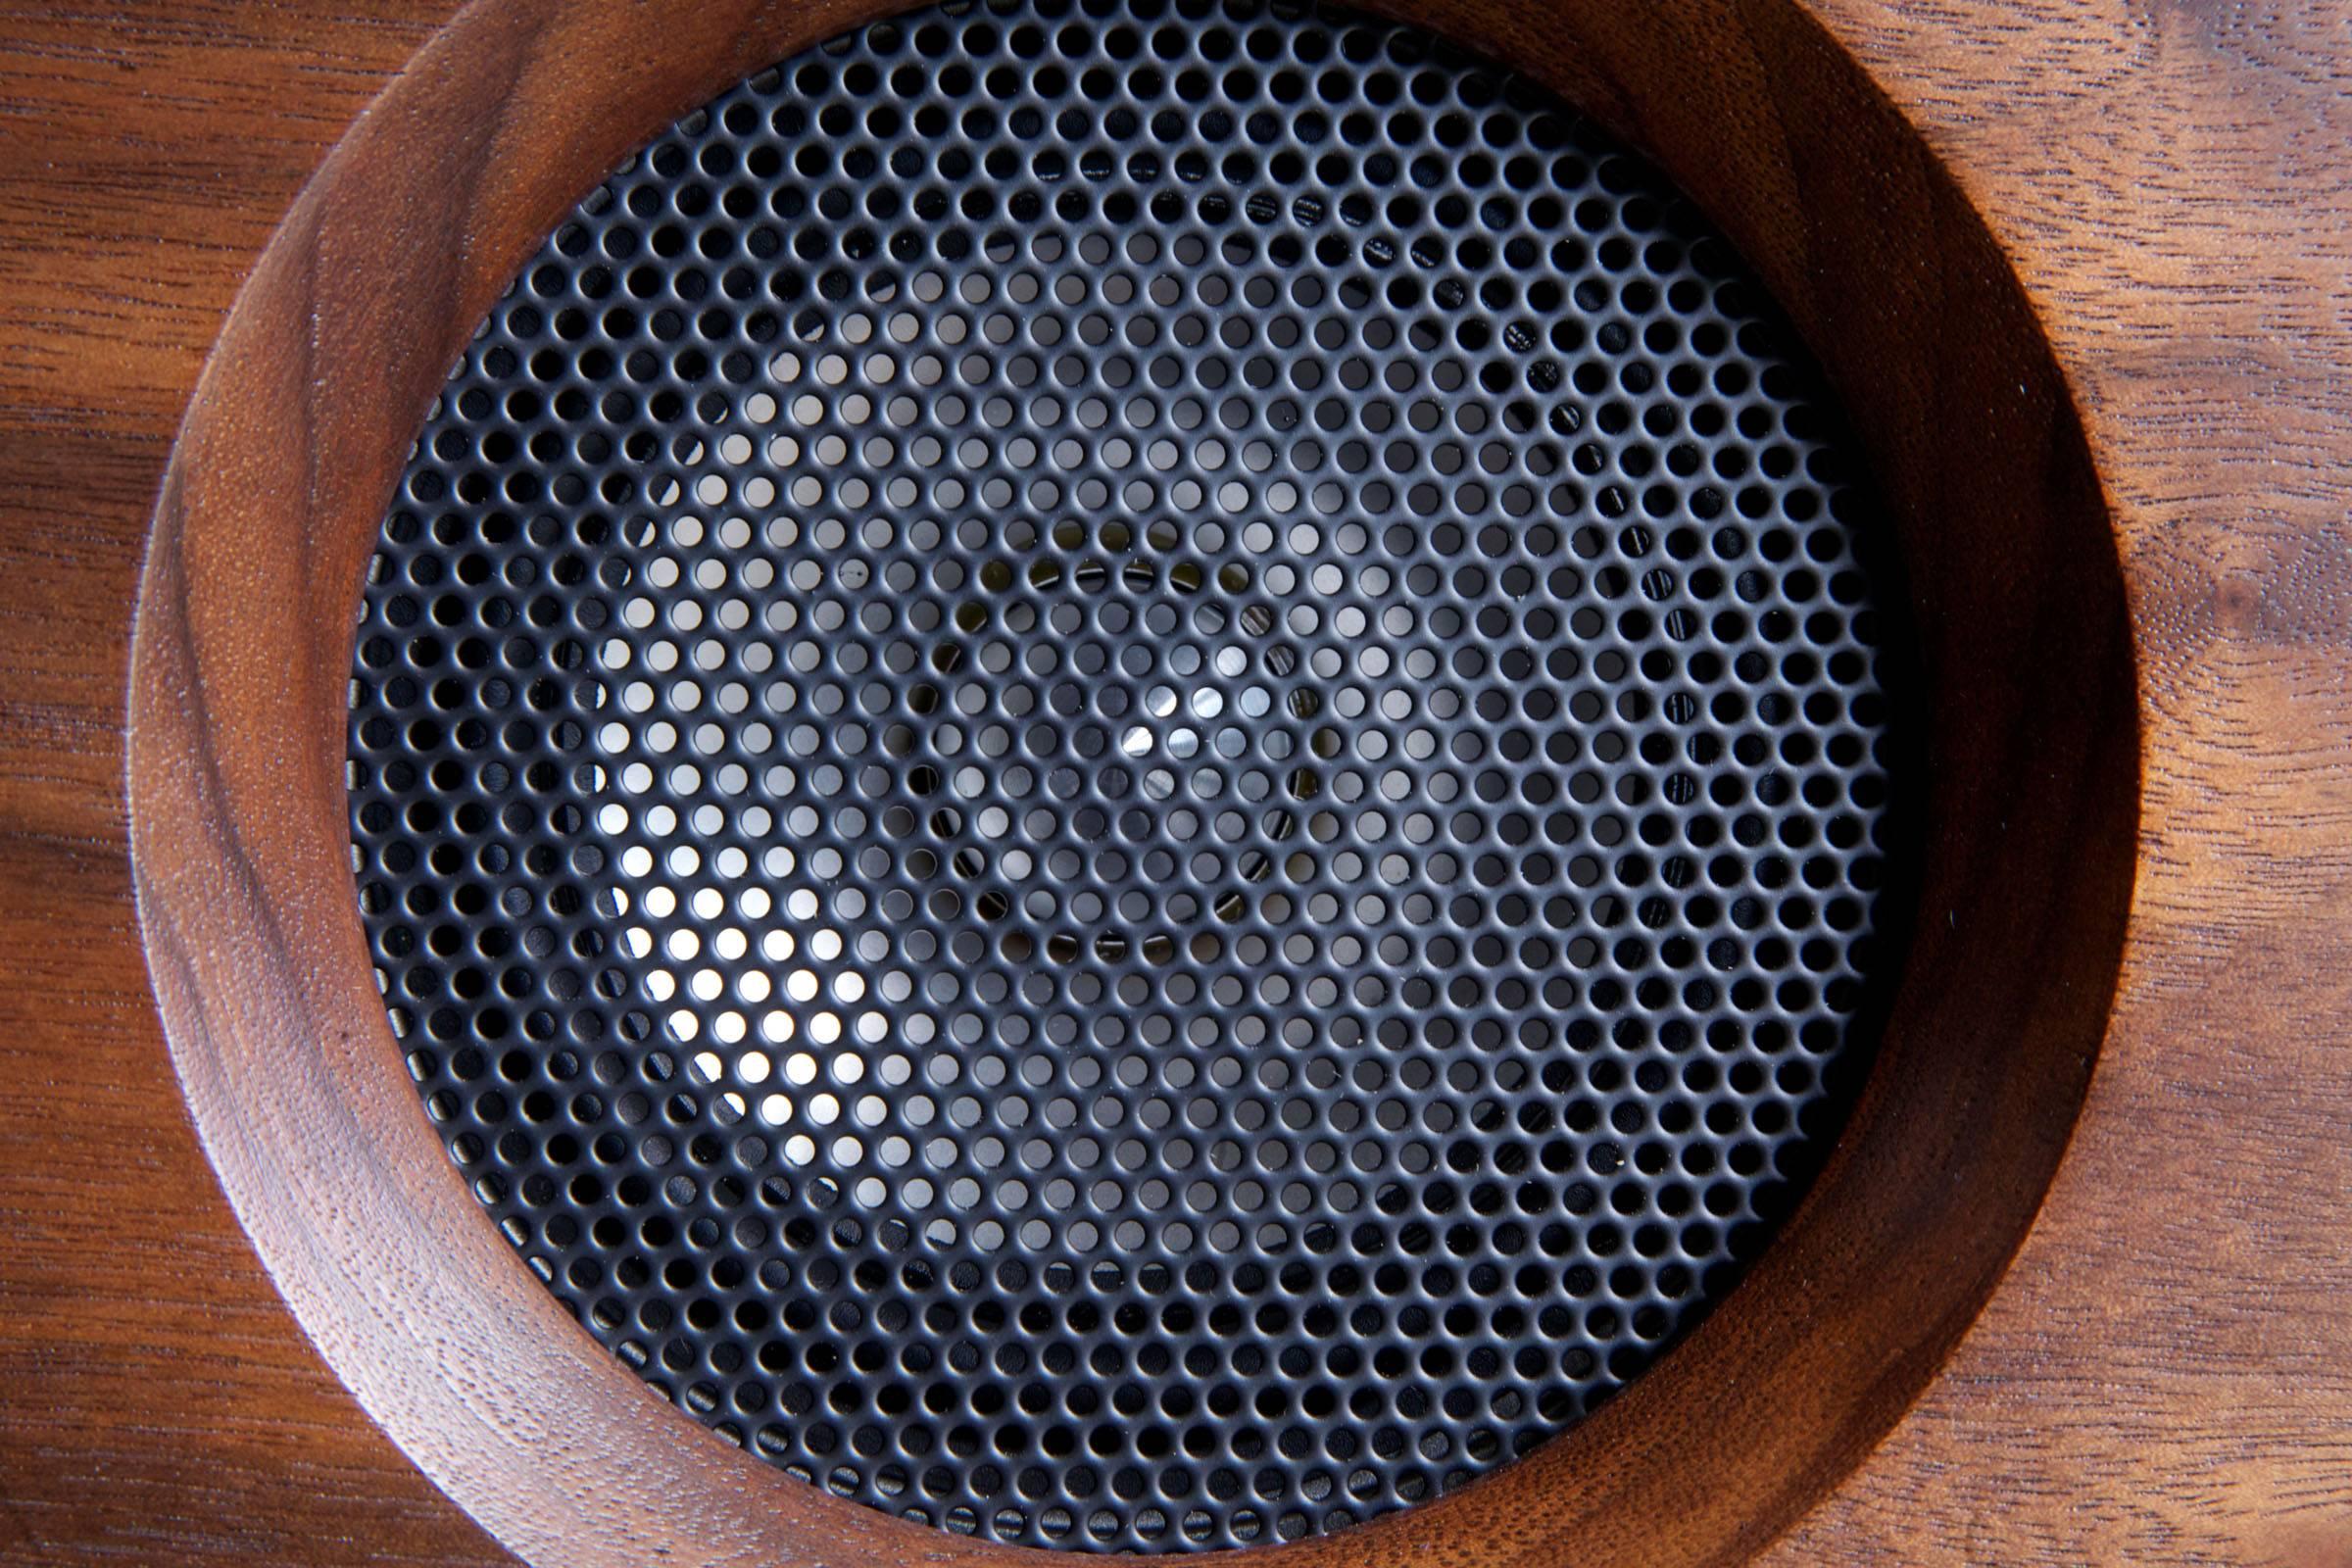 Tabletop HiFi Speaker Glacier White Cabinet with Slate Grey Speaker Front 3